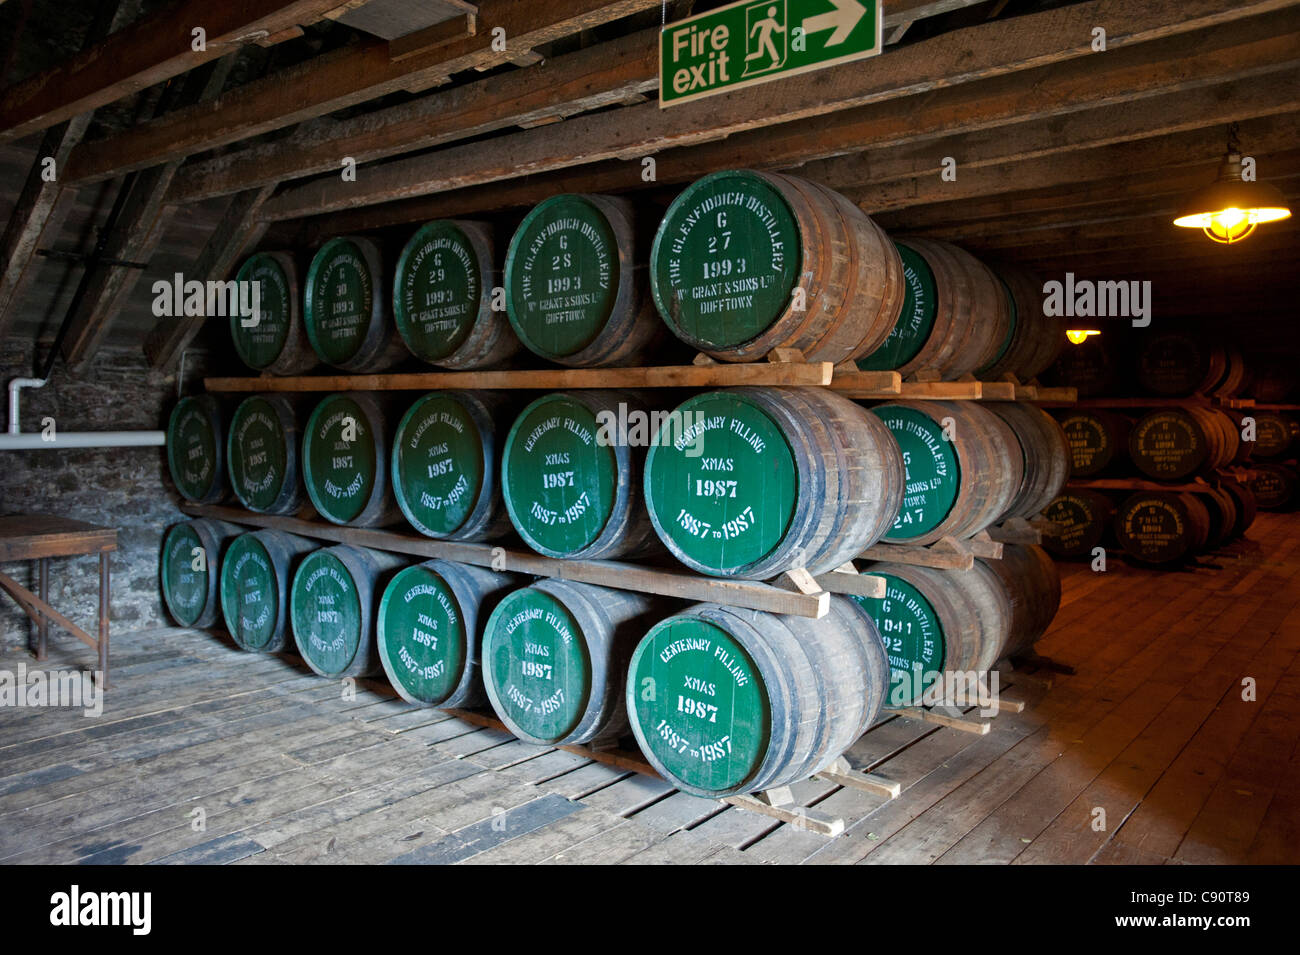 Warehouse full of oak barrels at the Glenfiddich Destillery, Dufftown, Aberdeenshire, Scotland Stock Photo